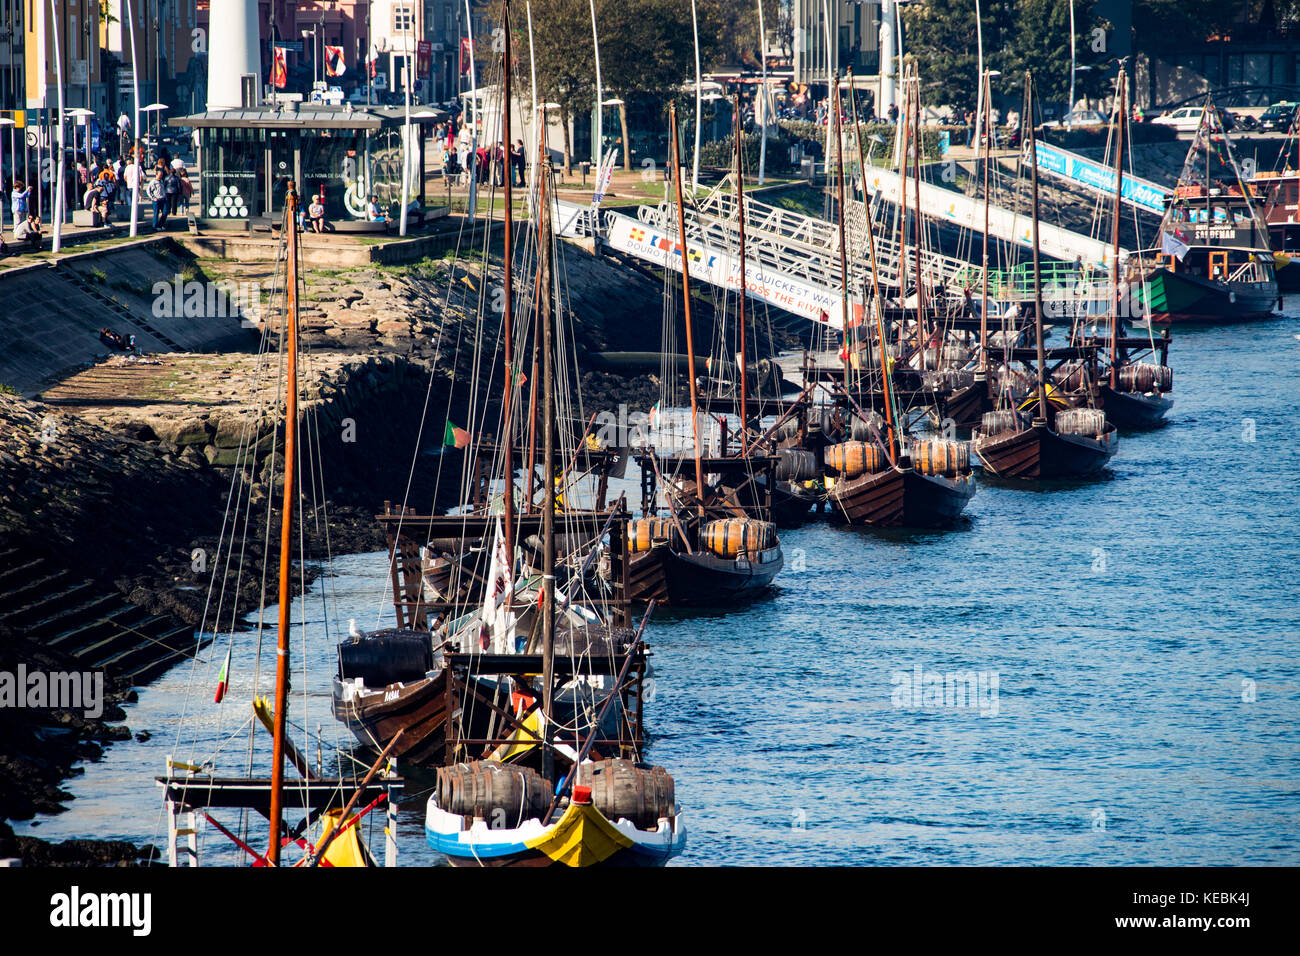 Storico Porto rabelo imbarcazioni fluviali sul fiume Douro con rabelo, Porto, Portogallo Foto Stock